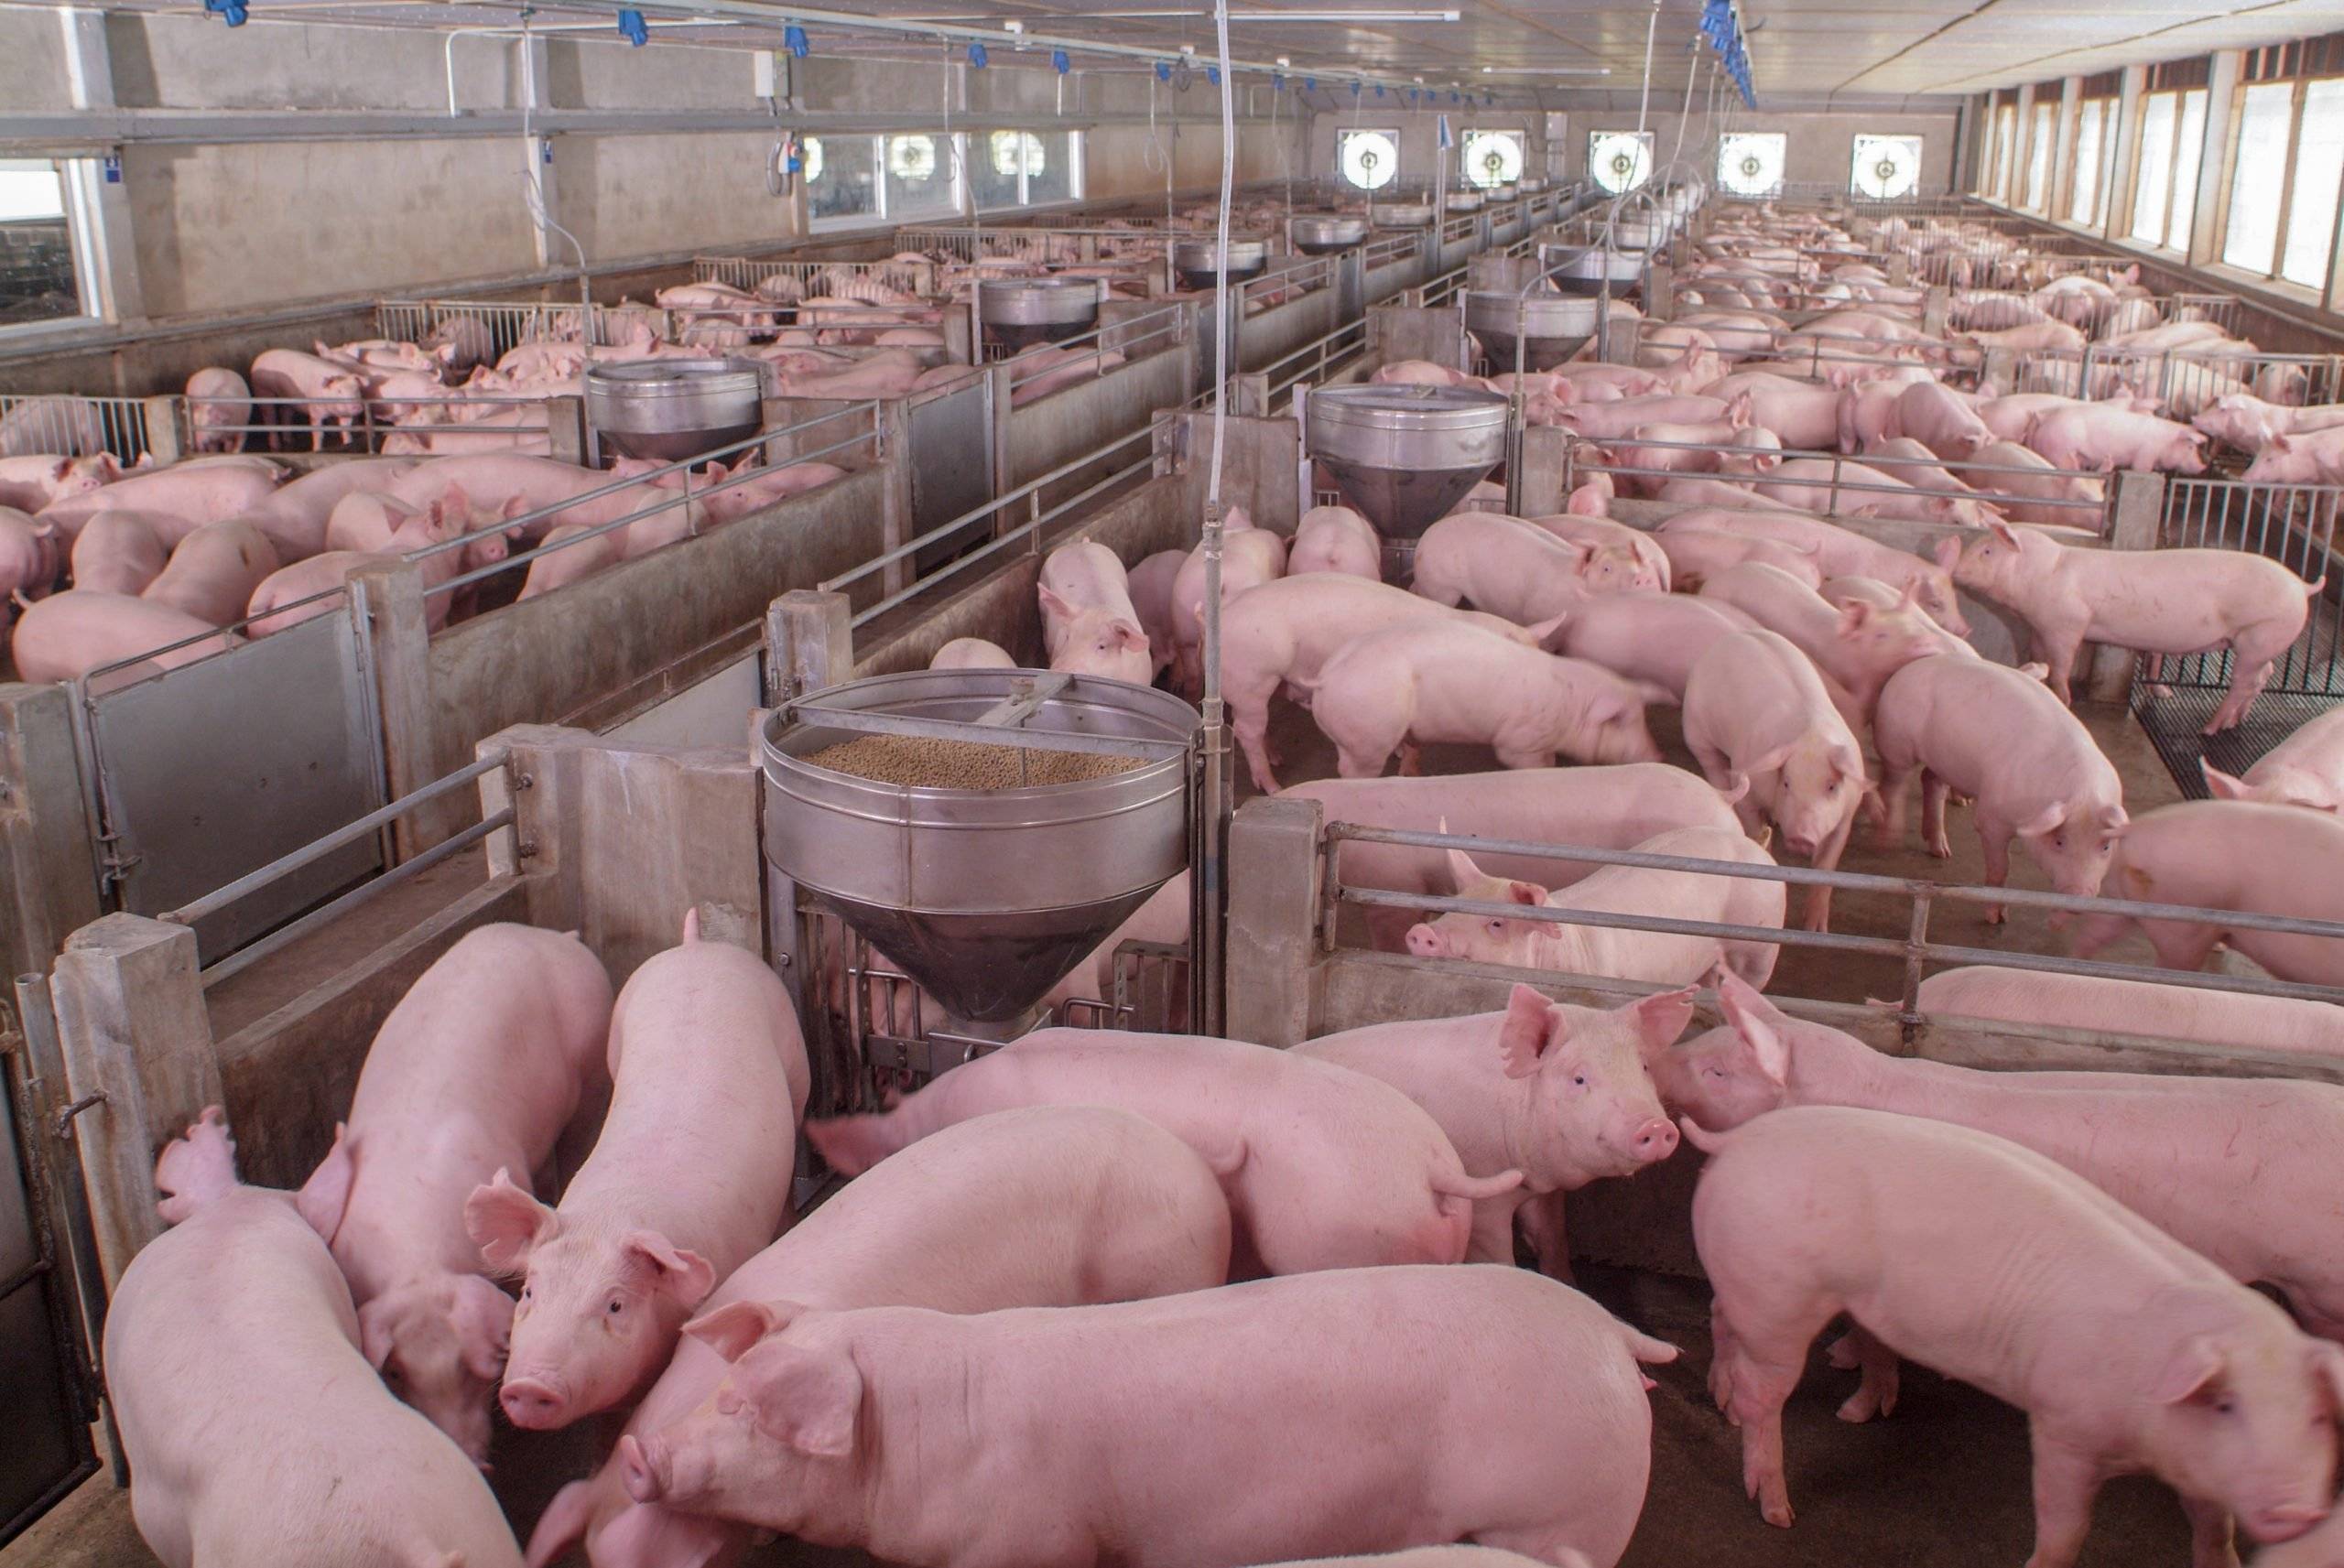  Свиноводство является основным драйвером роста производства мяса в стране